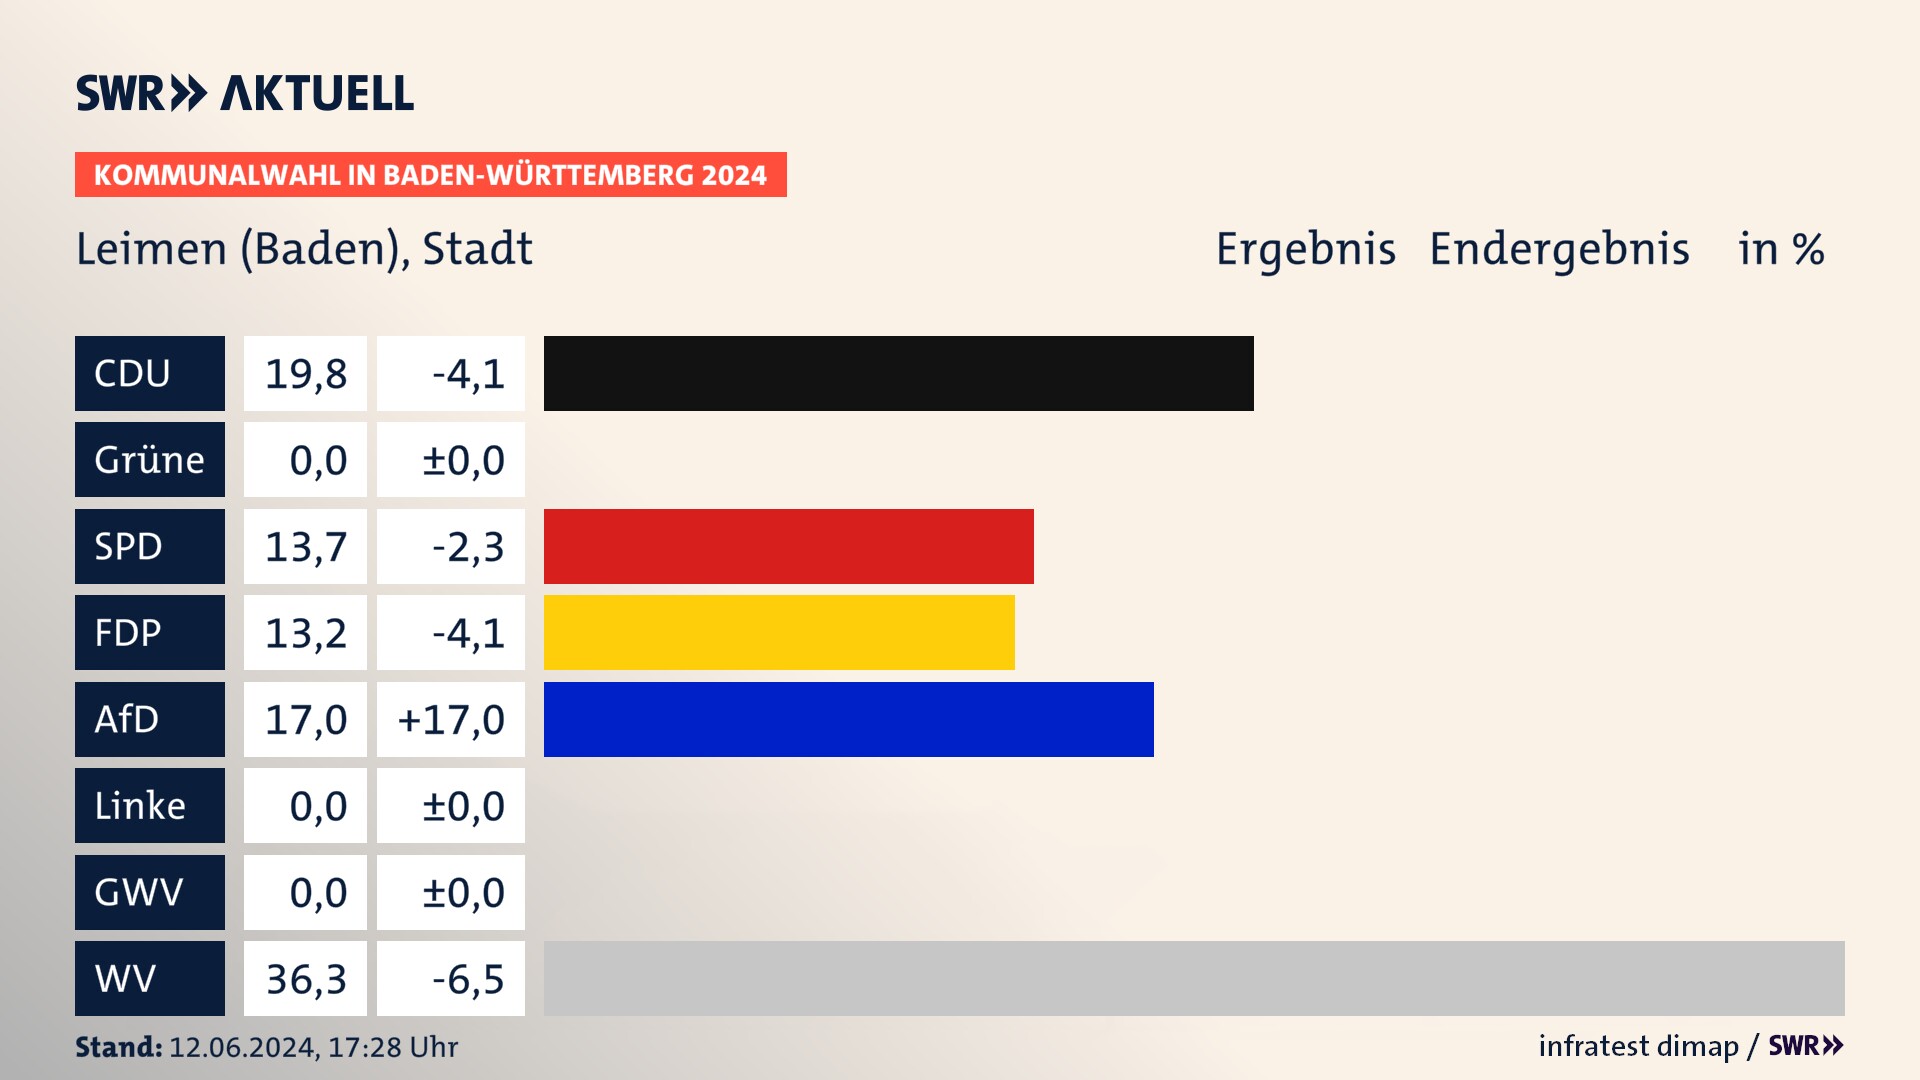 Kommunalwahl 2024 Endergebnis Zweitstimme für Leimen (Baden). In Leimen, Stadt erzielt die CDU 19,8 Prozent der gültigen  Stimmen. Die SPD landet bei 13,7 Prozent. Die FDP erreicht 13,2 Prozent. Die AfD kommt auf 17,0 Prozent. Die Wählervereinigungen landen bei 36,3 Prozent.